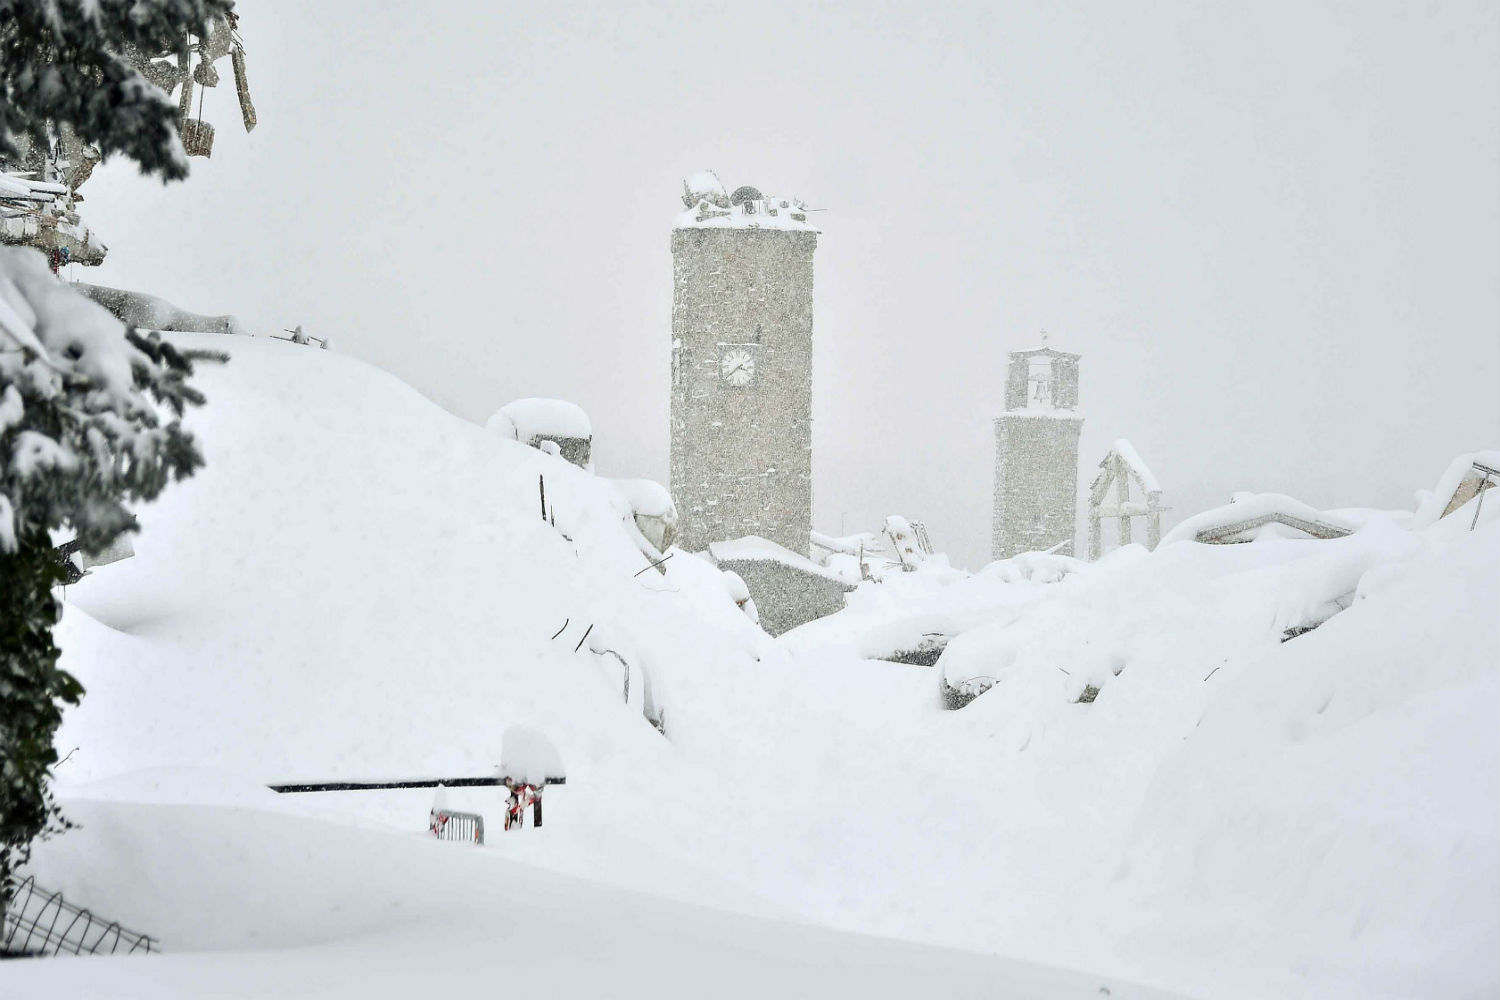 Una avalancha de nieve ha sepultado al menos a 20 personas en un hotel de Italia